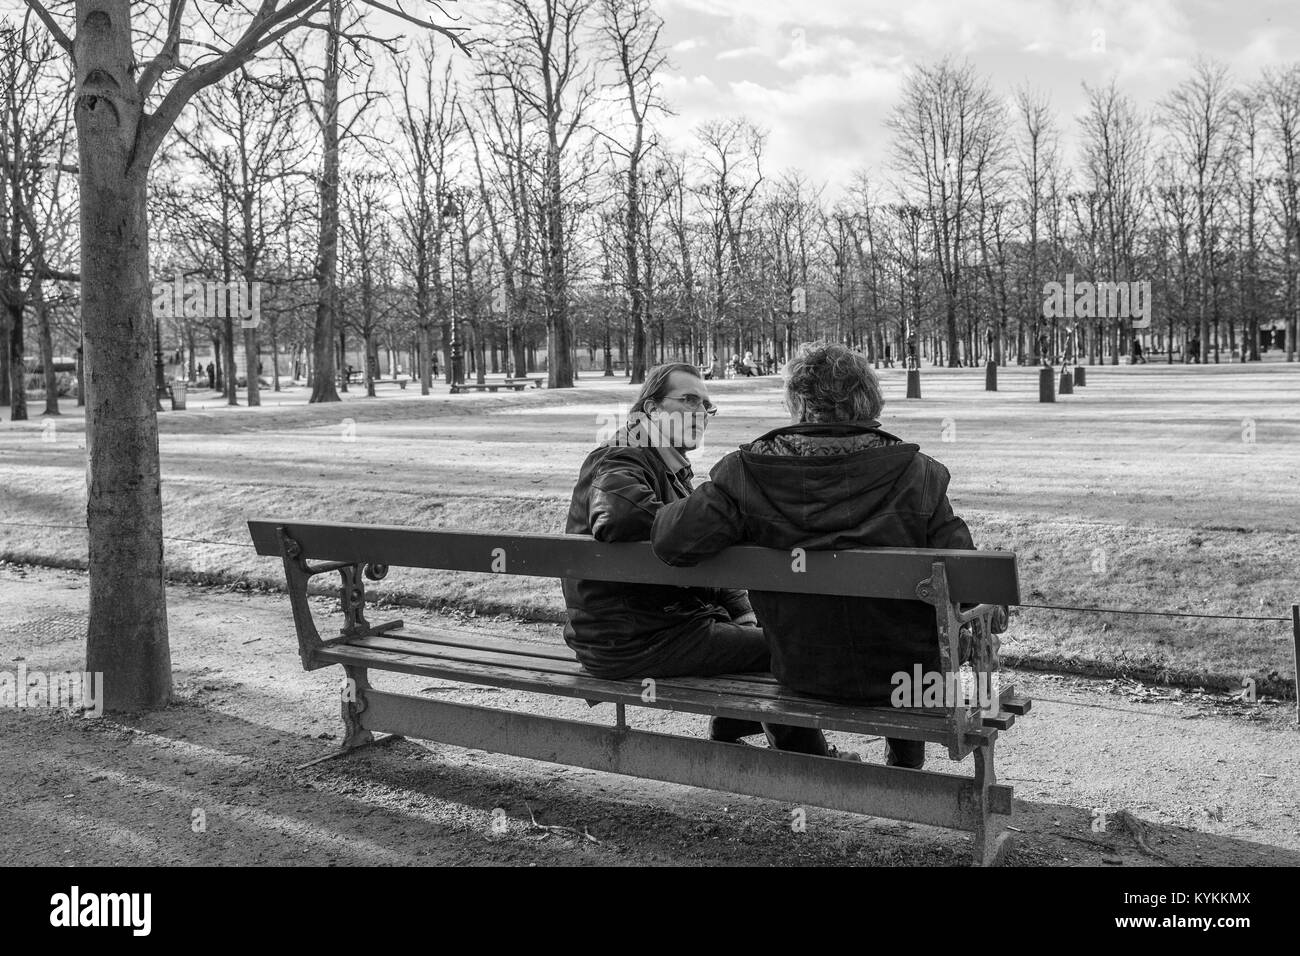 Parigi-Gen3, 2014: due uomini seduti su una panchina nel parco a parlare su un giorno d'inverno. In bianco e nero. Foto Stock